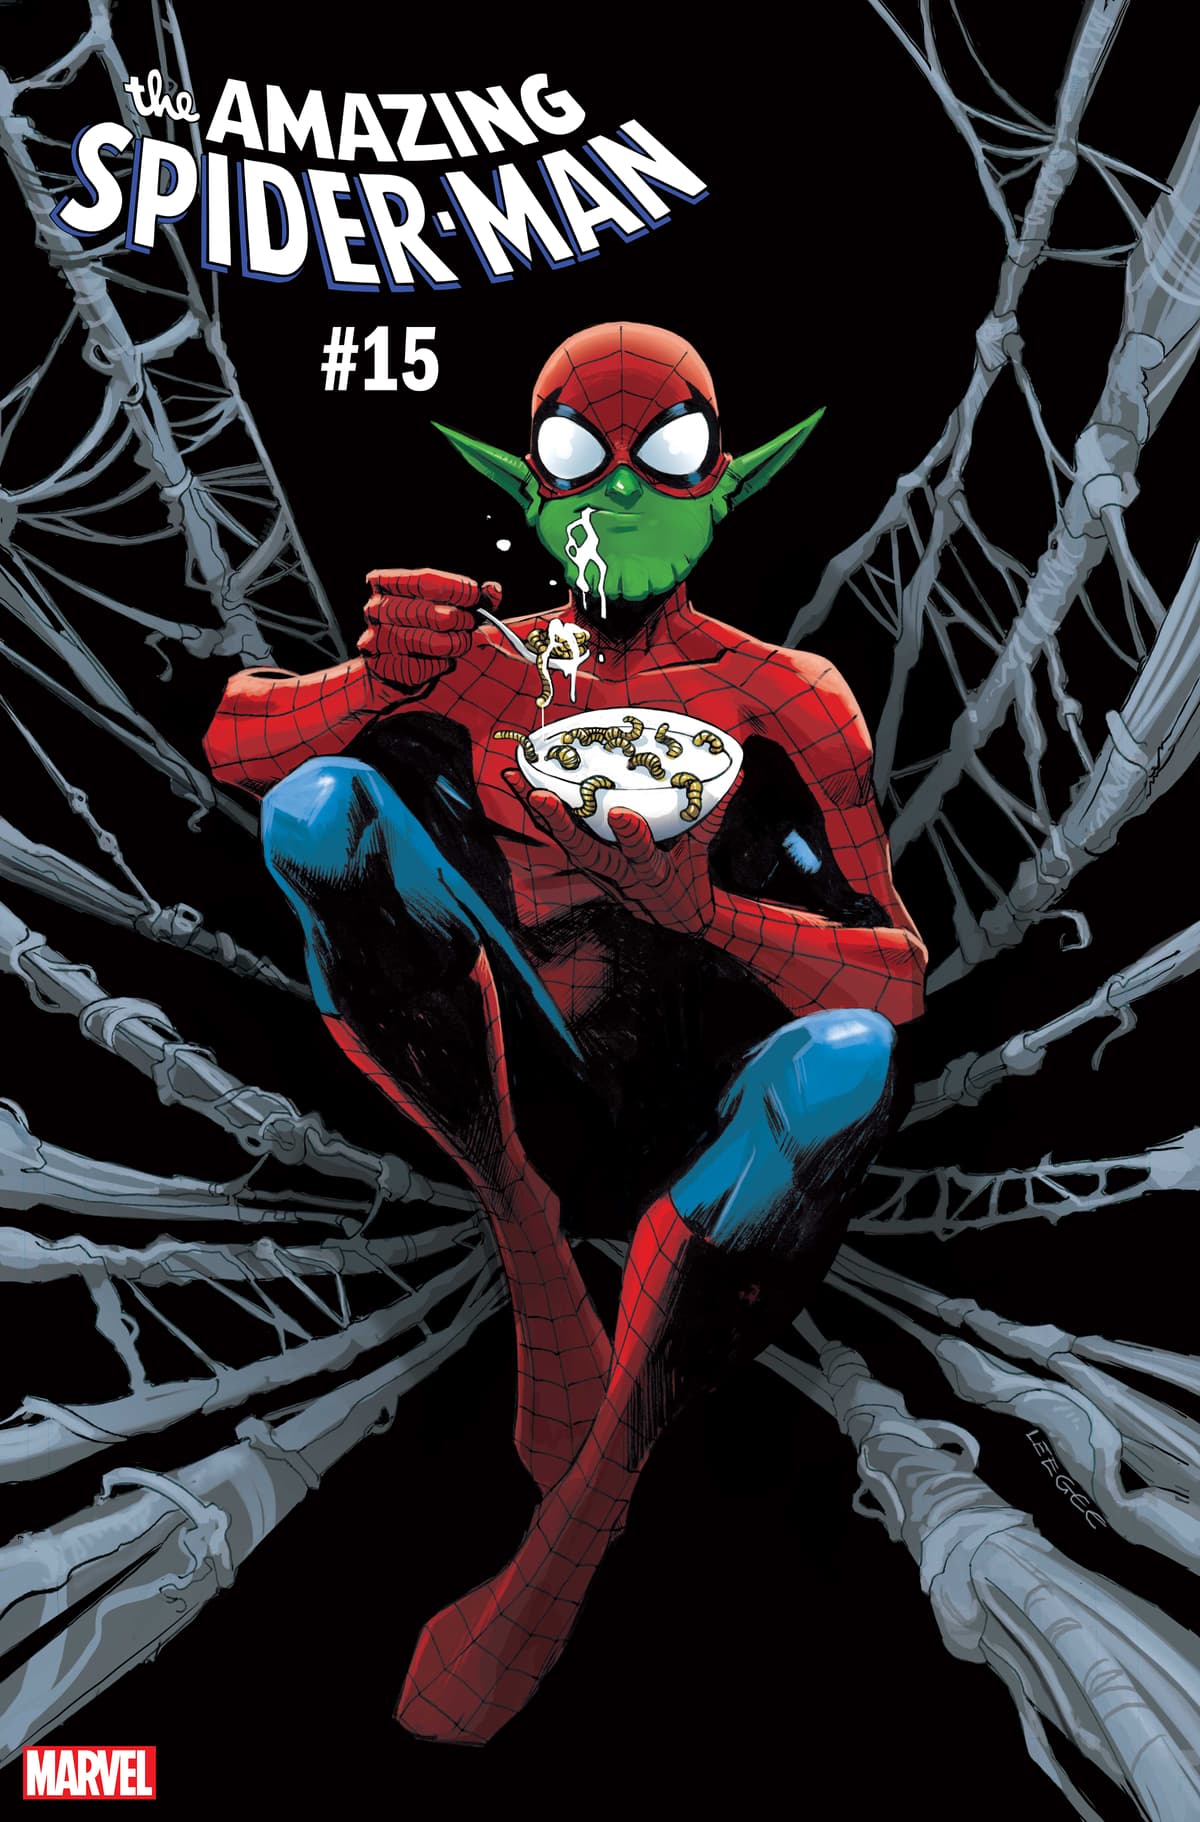 Amazing Spider-Man #15 Skrull variant cover